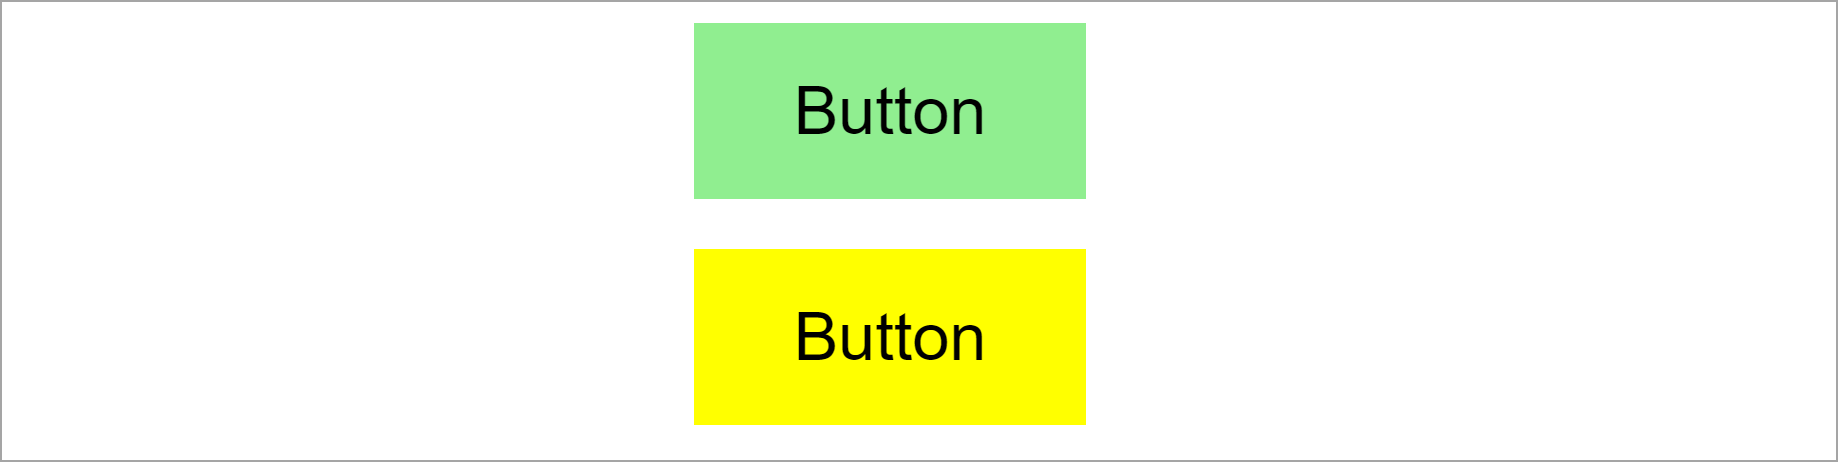 Deux boutons stylisés dynamiquement avec JSS